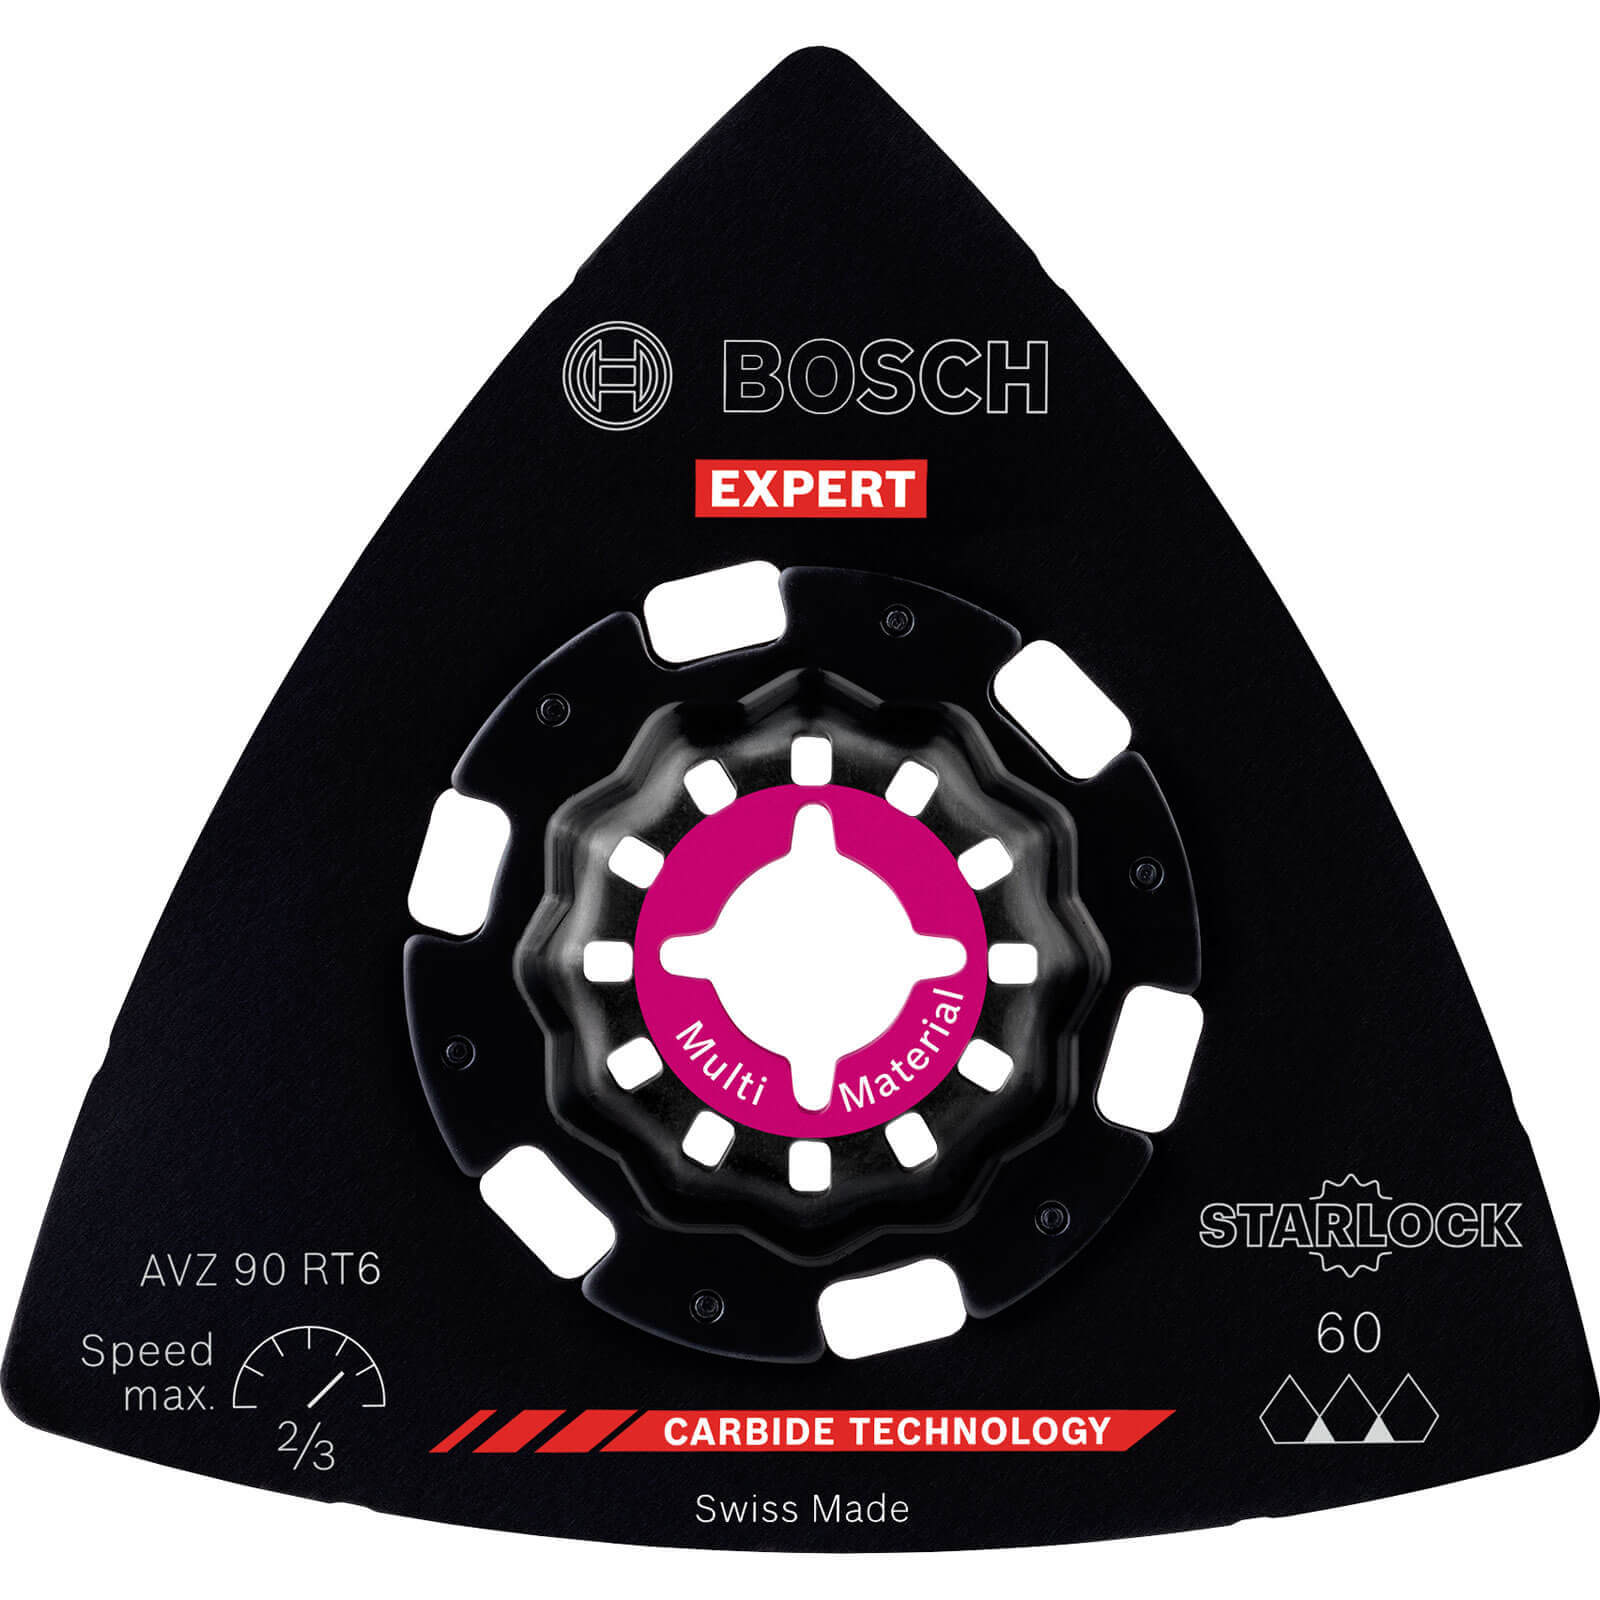 Bosch Expert AVZ 90 RT Starlock Oscillating Multi Tool Sanding Plate 90mm 60g Pack of 1